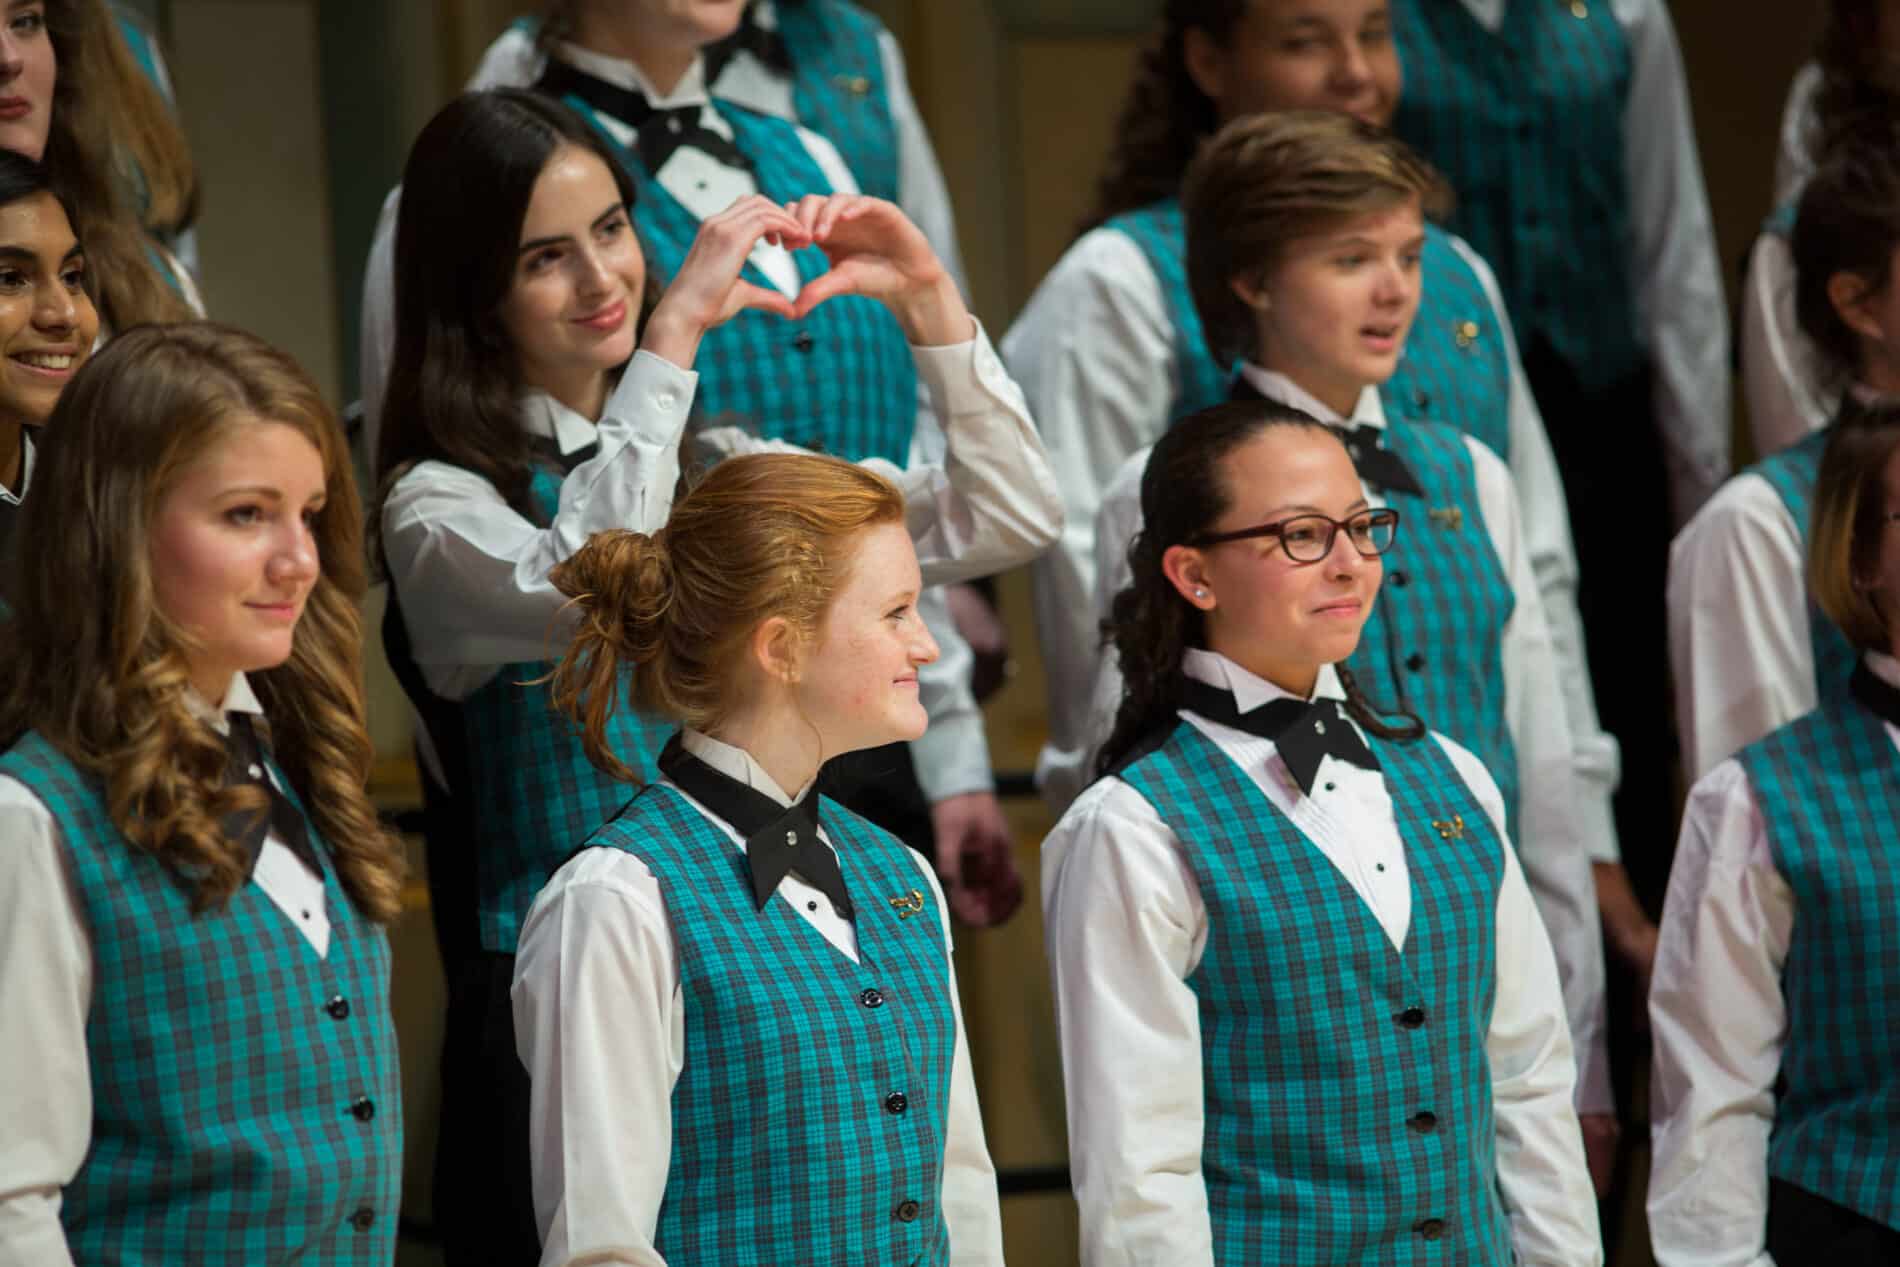 spivey hall tour choir